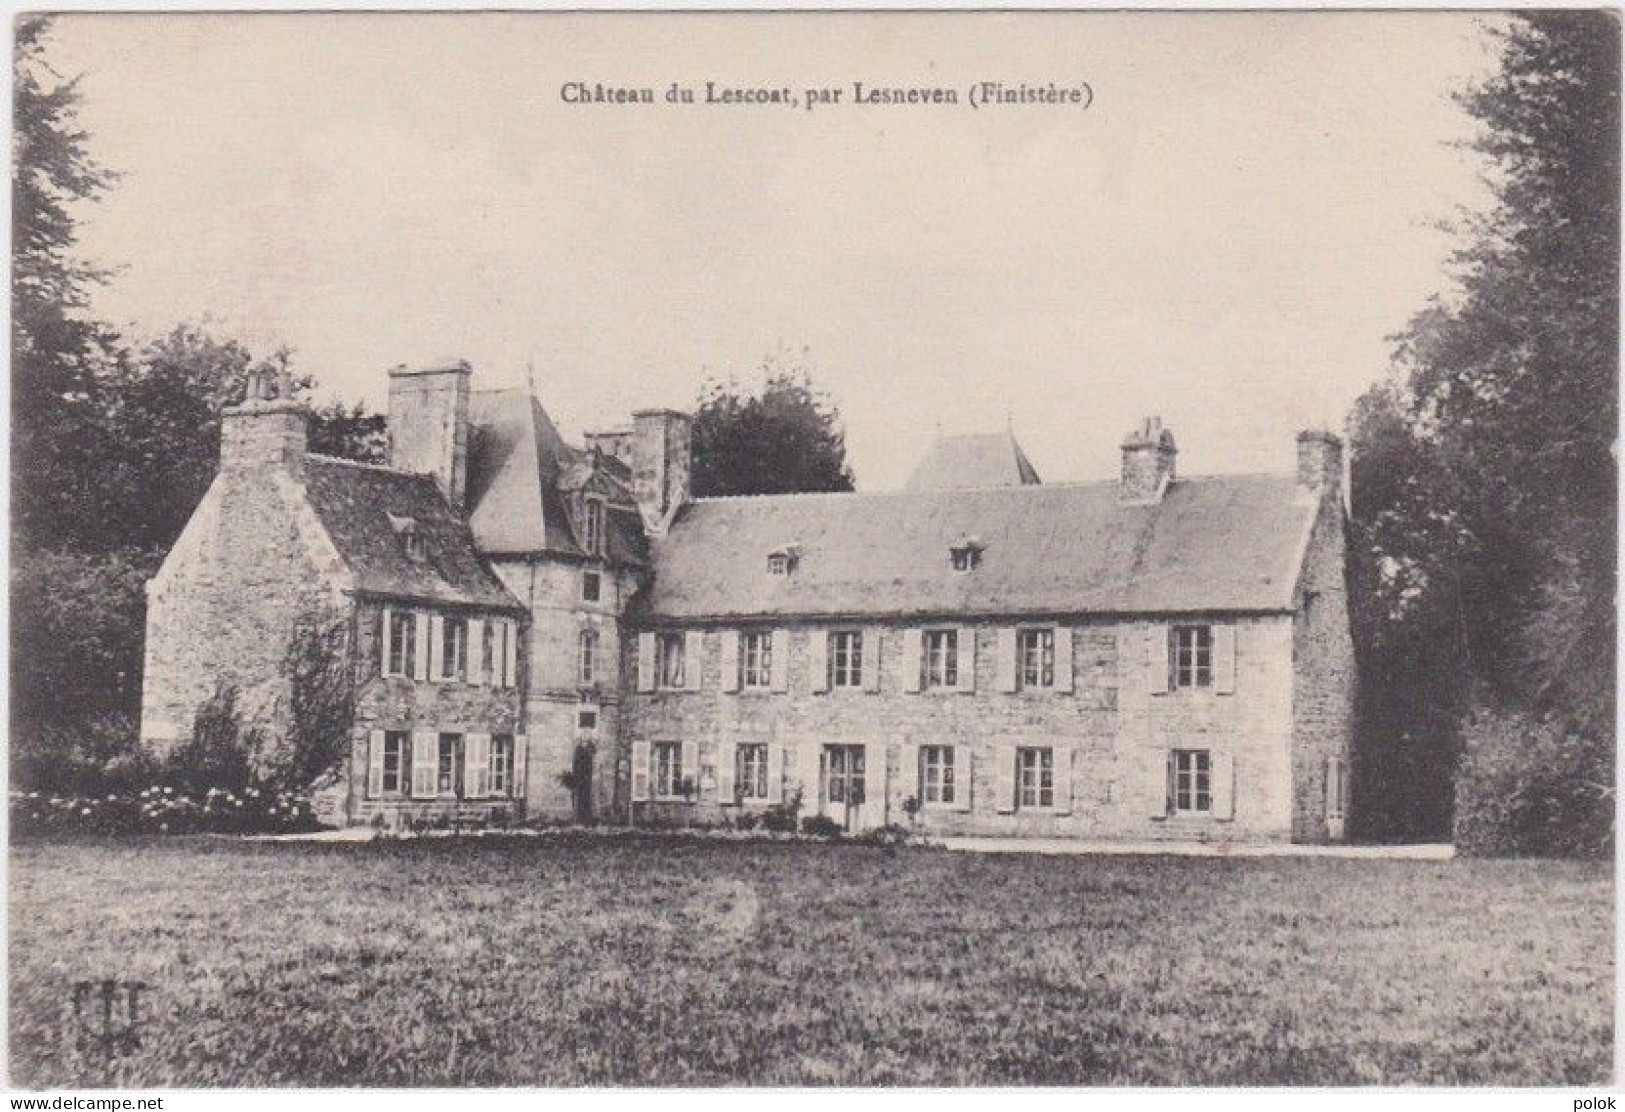 Cn – Cpa LESNEVEN – Château Du Lescoat - Lesneven